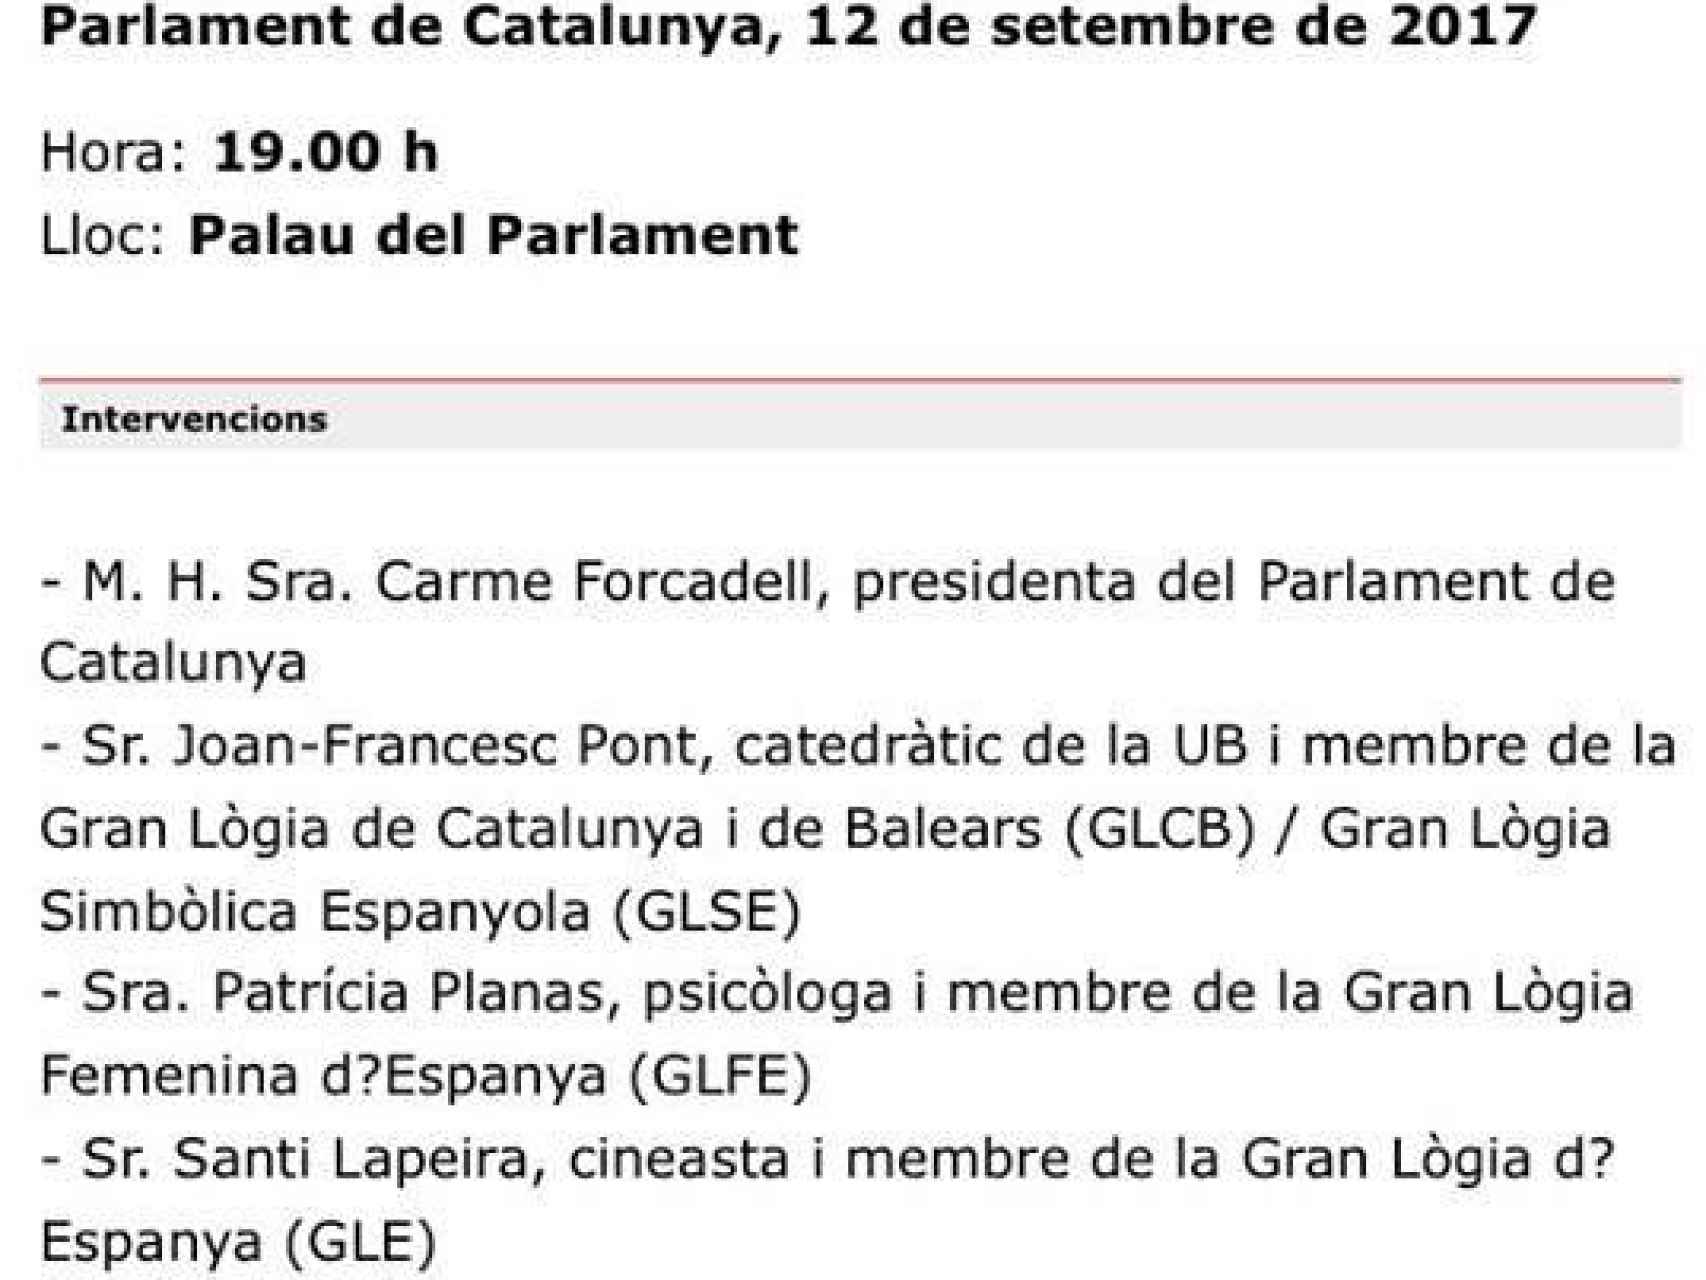 Invitación que envió el Parlament de Cataluña.